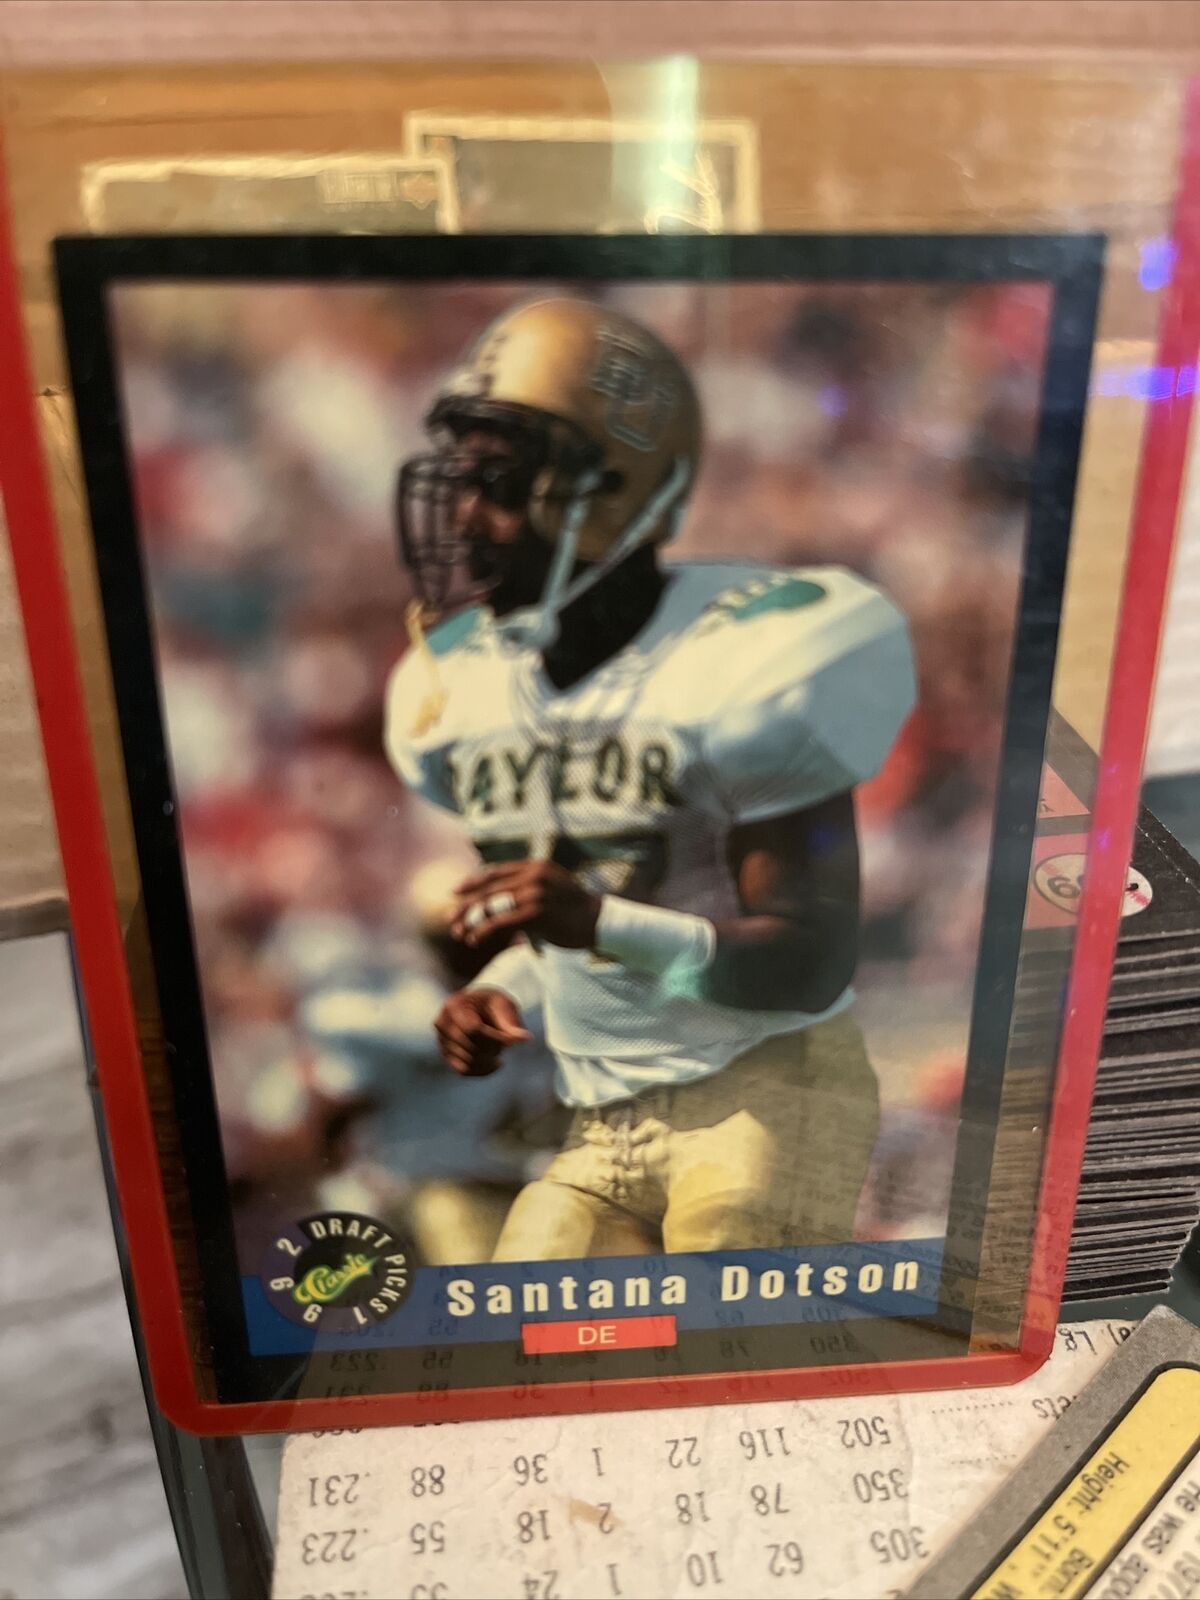 Santana Dotson 1992